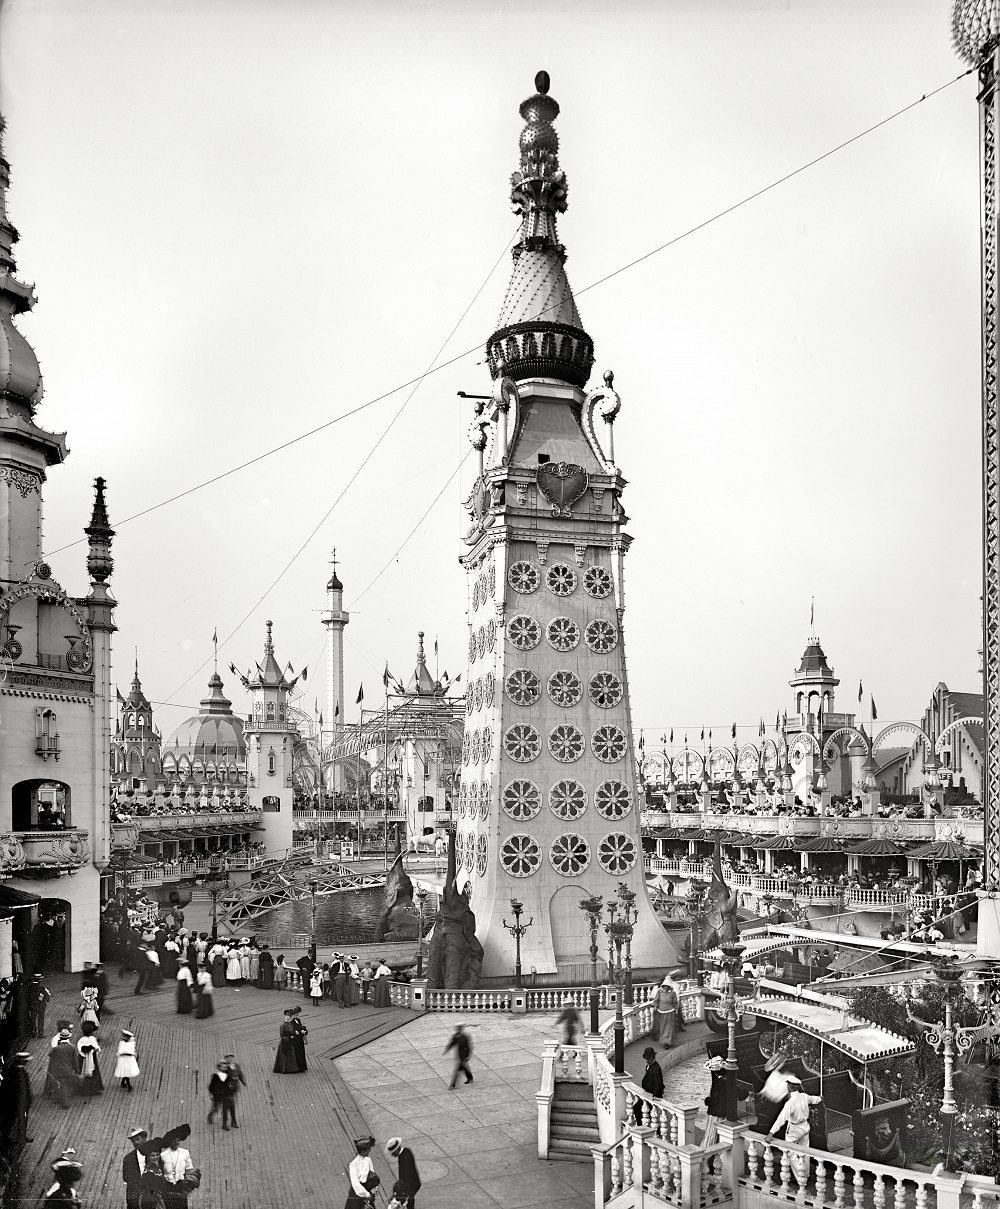 Main tower, Luna Park, Coney Island, New York circa 1905